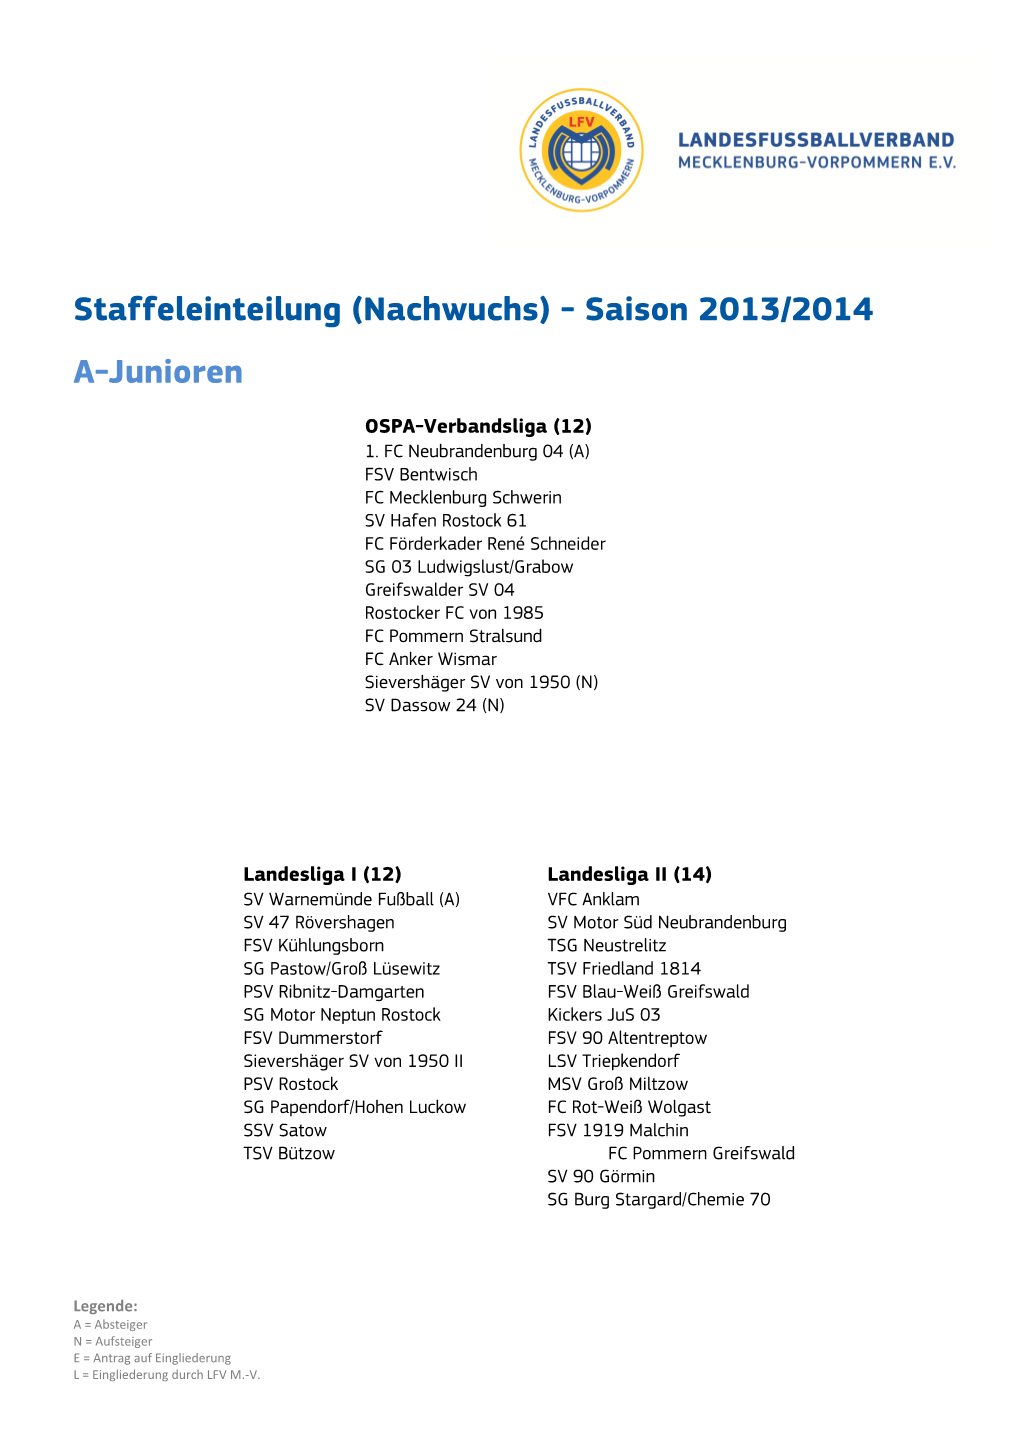 Staffeleinteilung (Nachwuchs) - Saison 2013/2014 A-Junioren